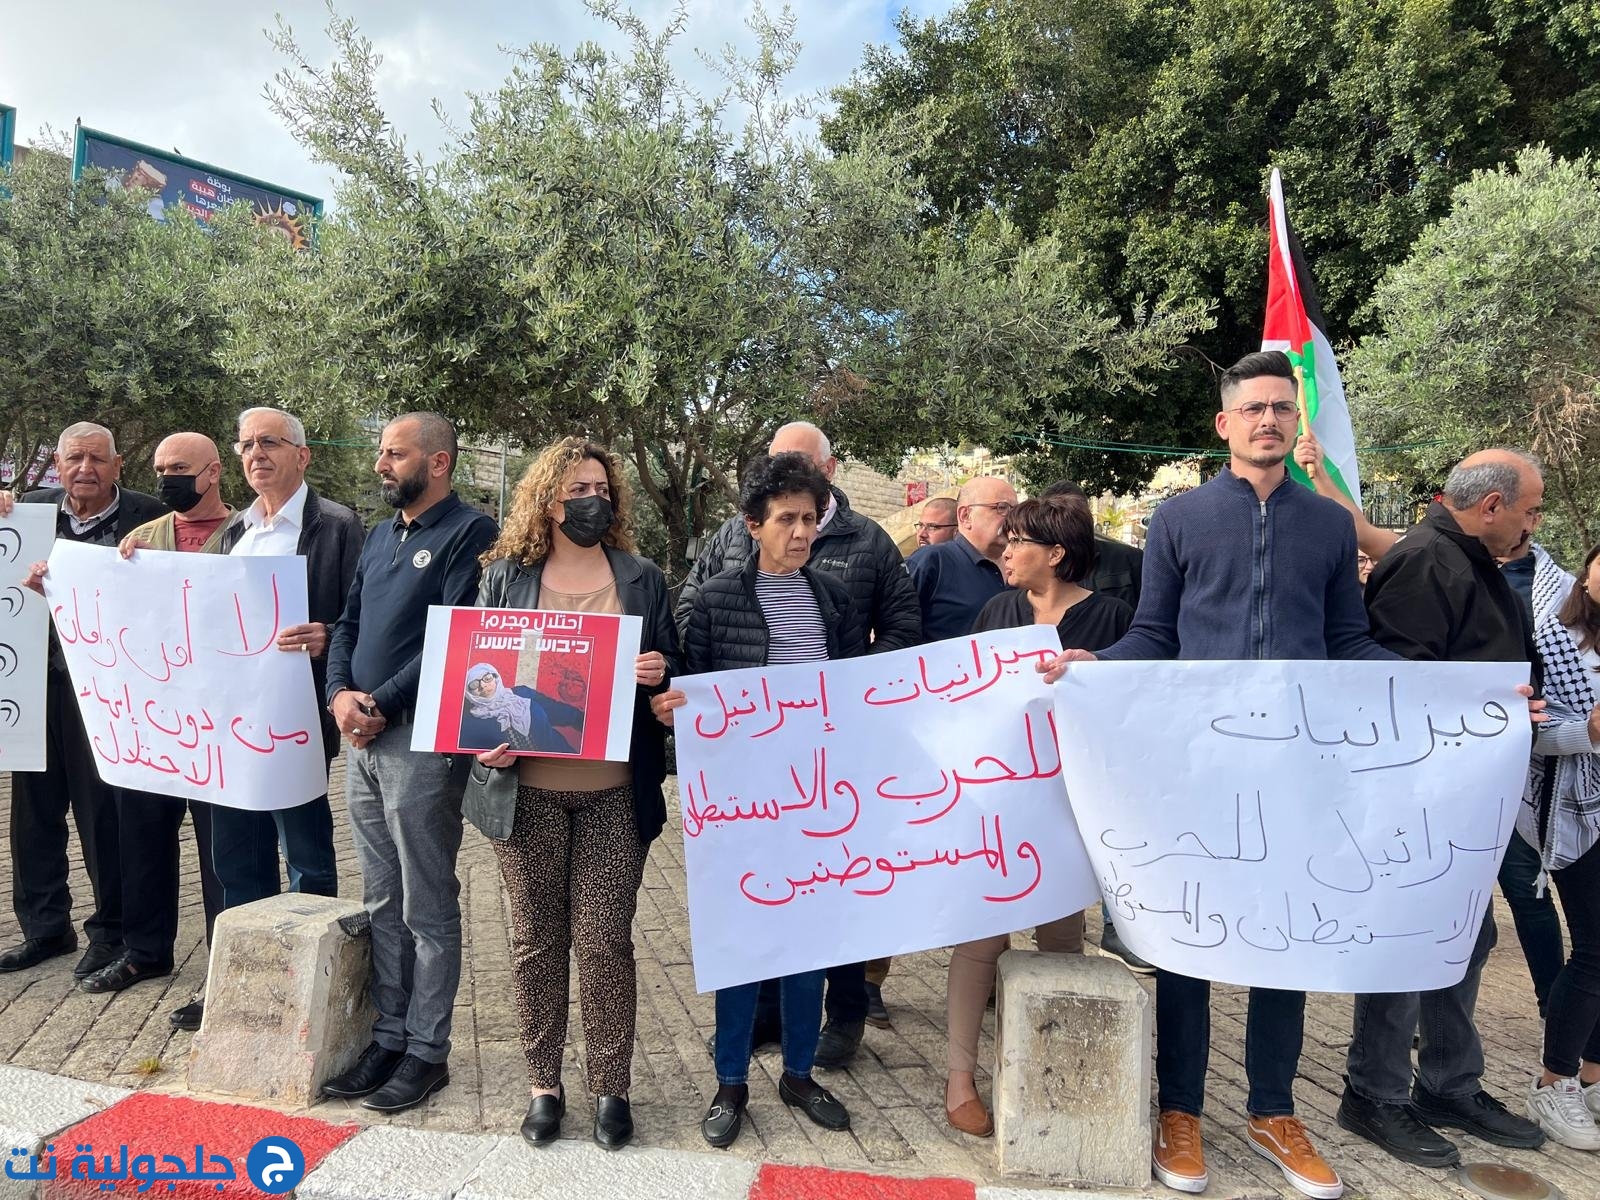 وقفة احتجاجية في الناصرة ضد الممارسات الإسرائيلية بحق الفلسطينيين